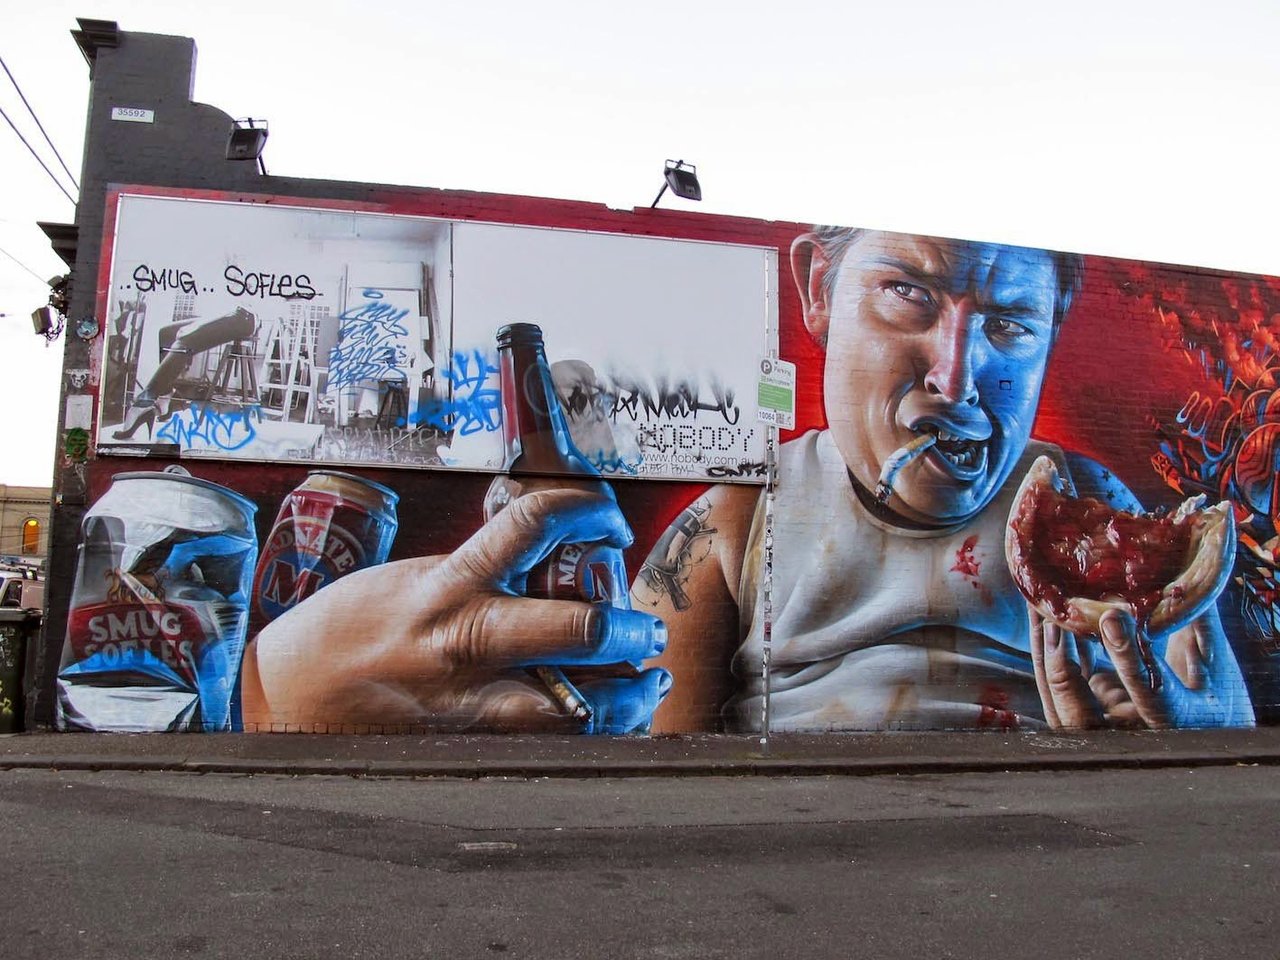 Mural by Adnate, Smug & Sofles; Melbourne, Australia #streetart #urbanart #art #Graffiti #Melbourne #Australia https://t.co/ffOifdPQsT